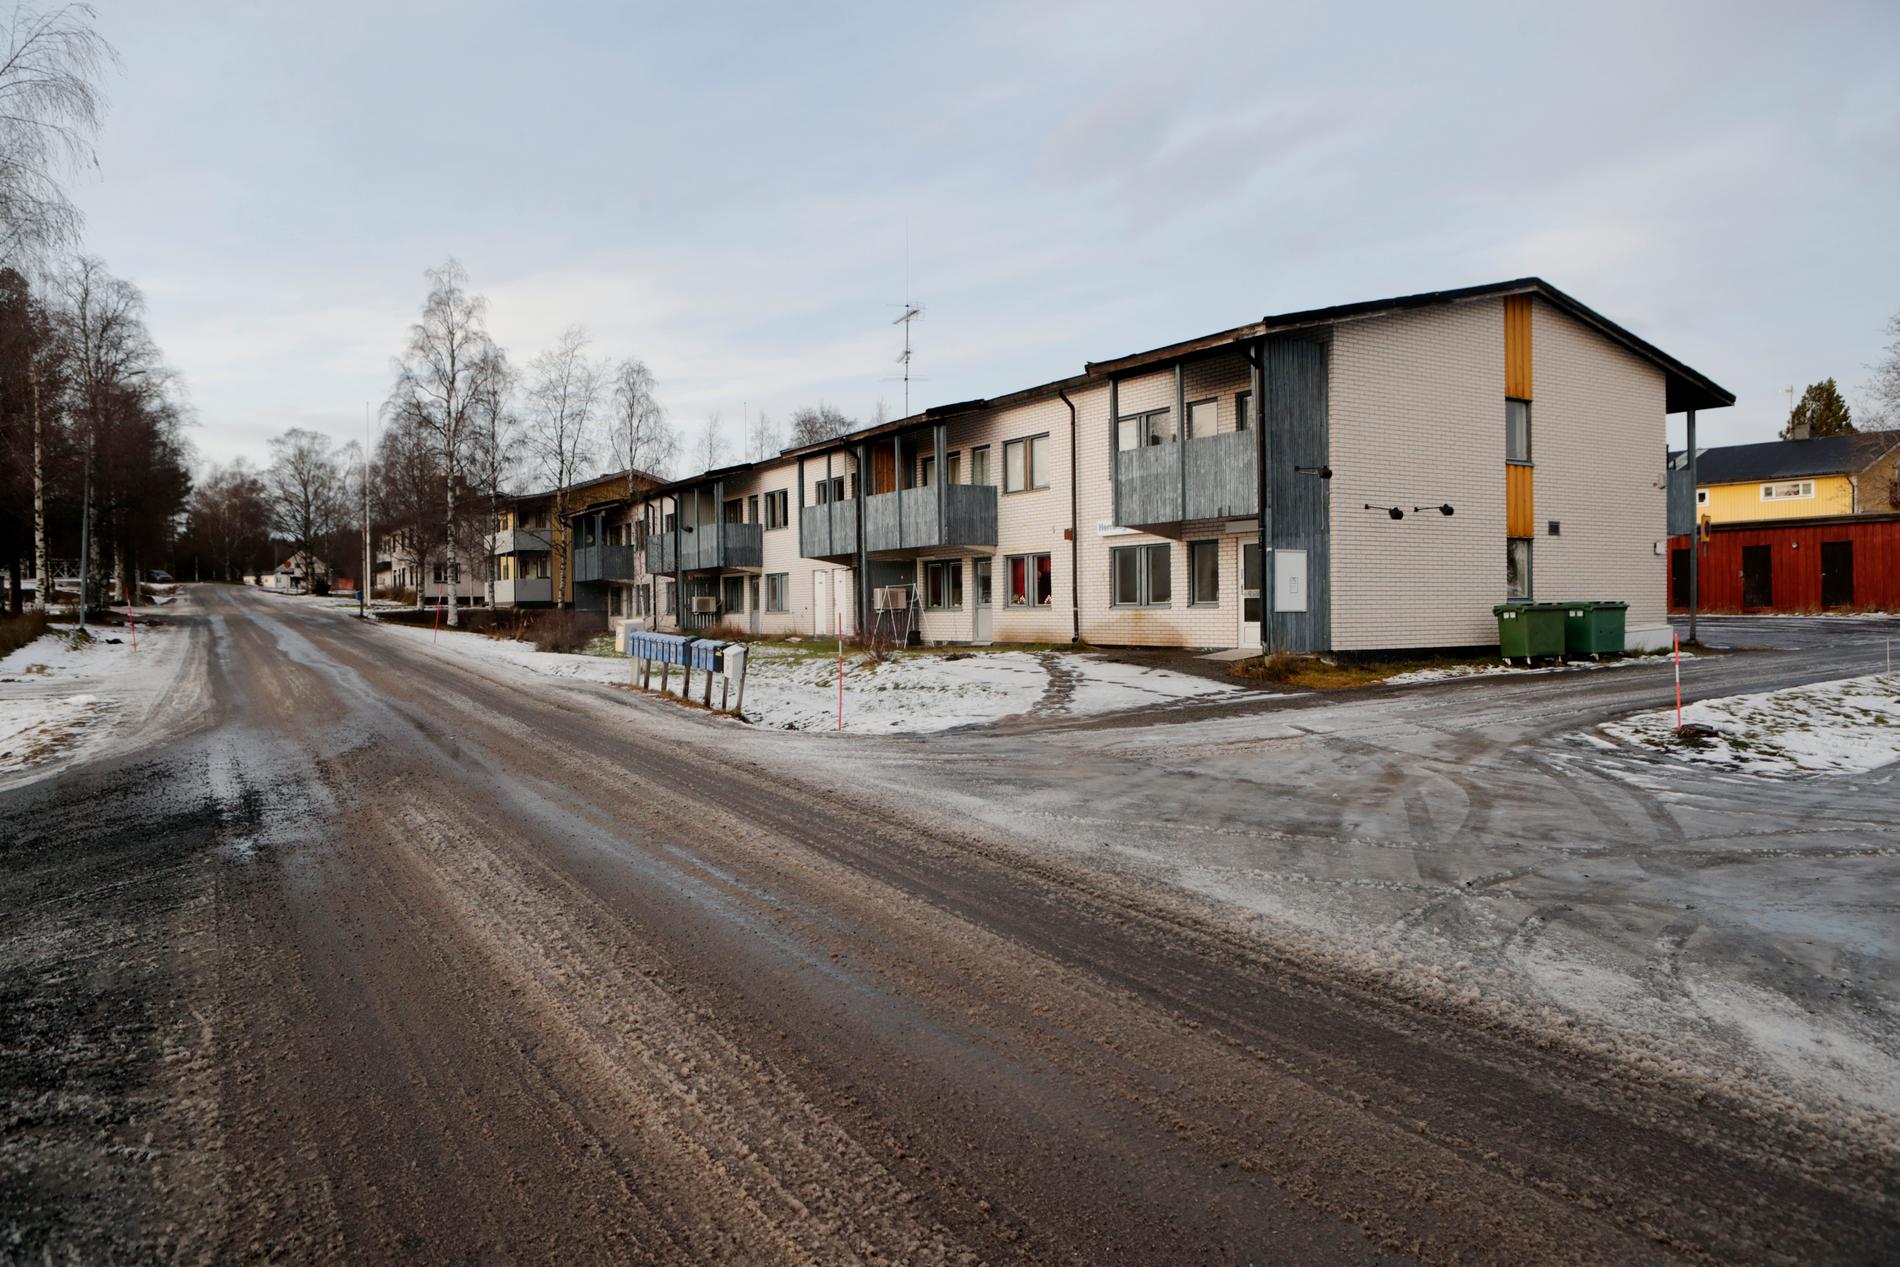 Samhället Herrskog utanför Kramfors. En av de kommuner som tagit emot personer som hänvisats från större kommuner.